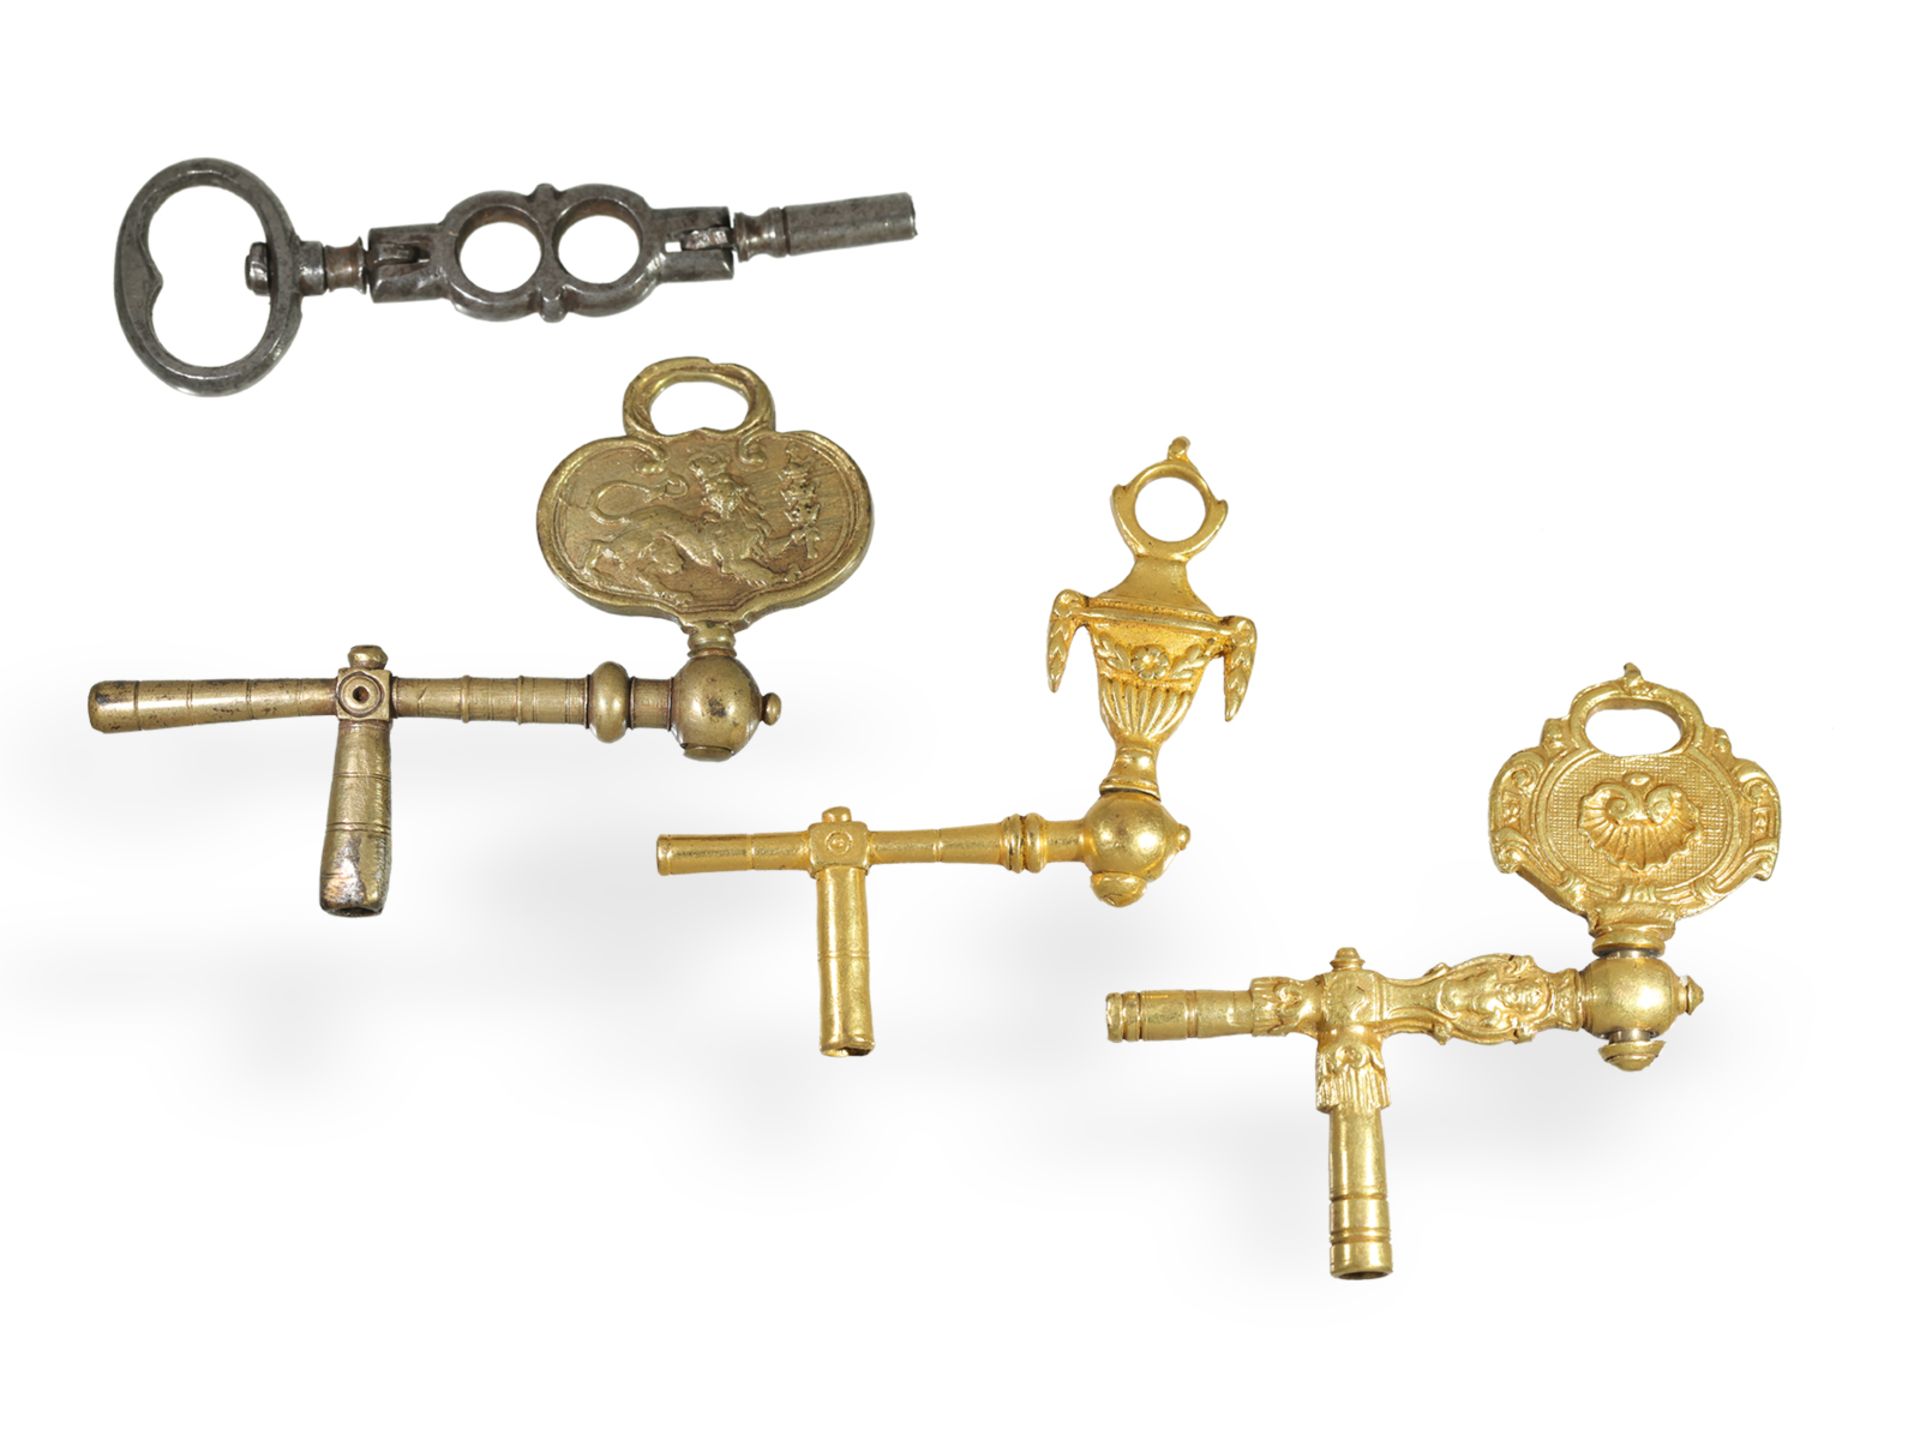 Uhrenschlüssel: 4 sehr seltene Kurbelschlüssel um 1700 - Bild 2 aus 2